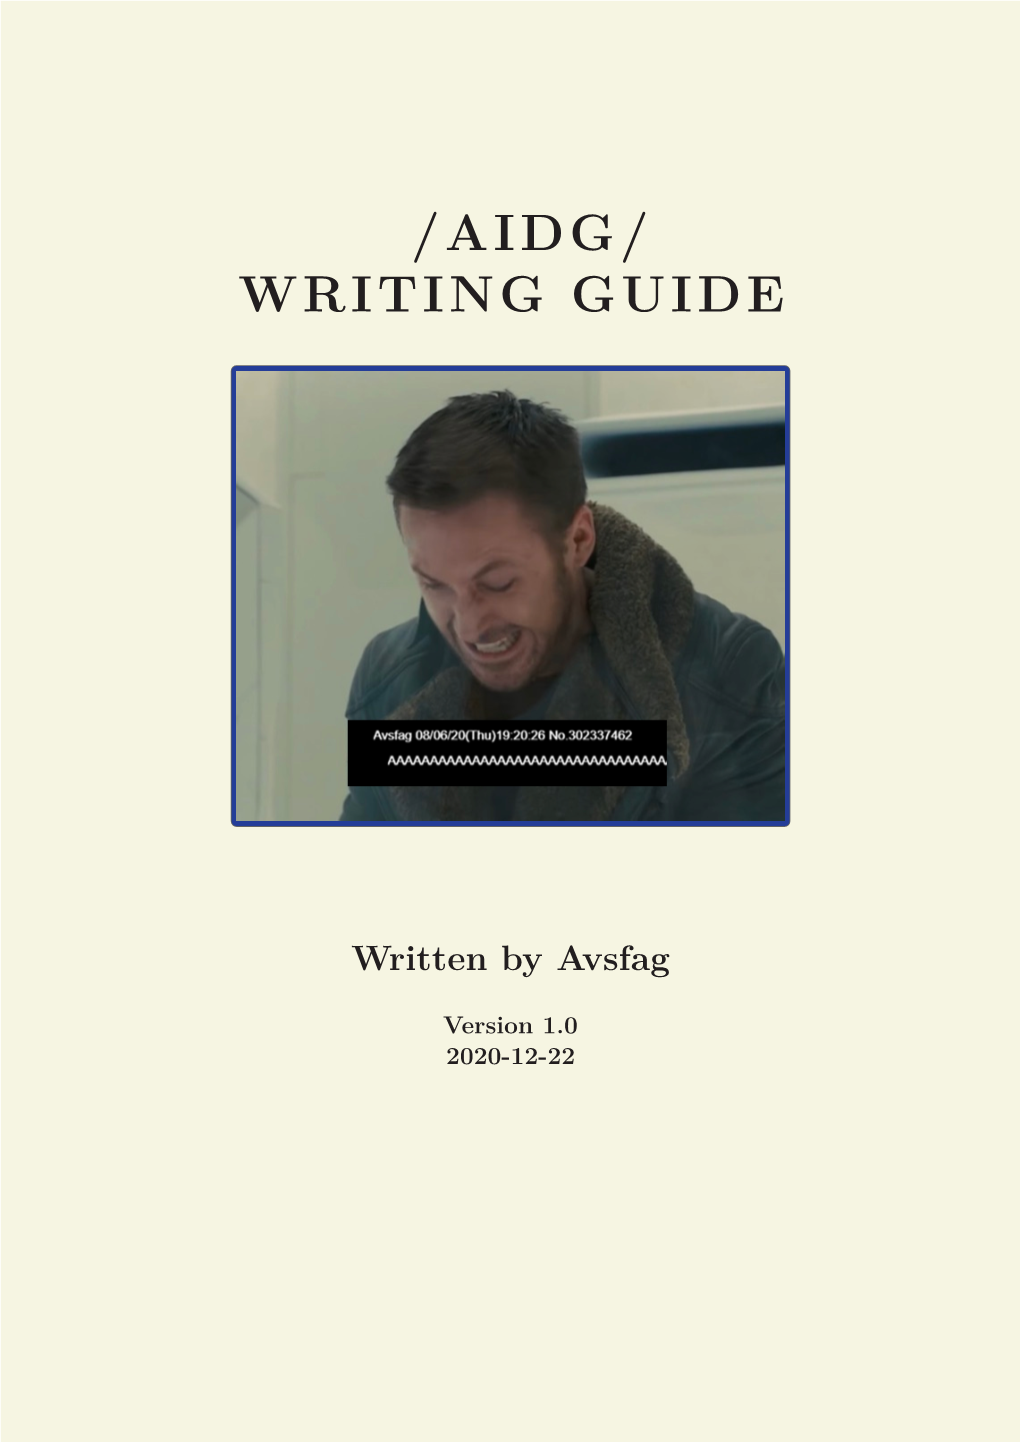 AIDG Writing Guide.Pdf